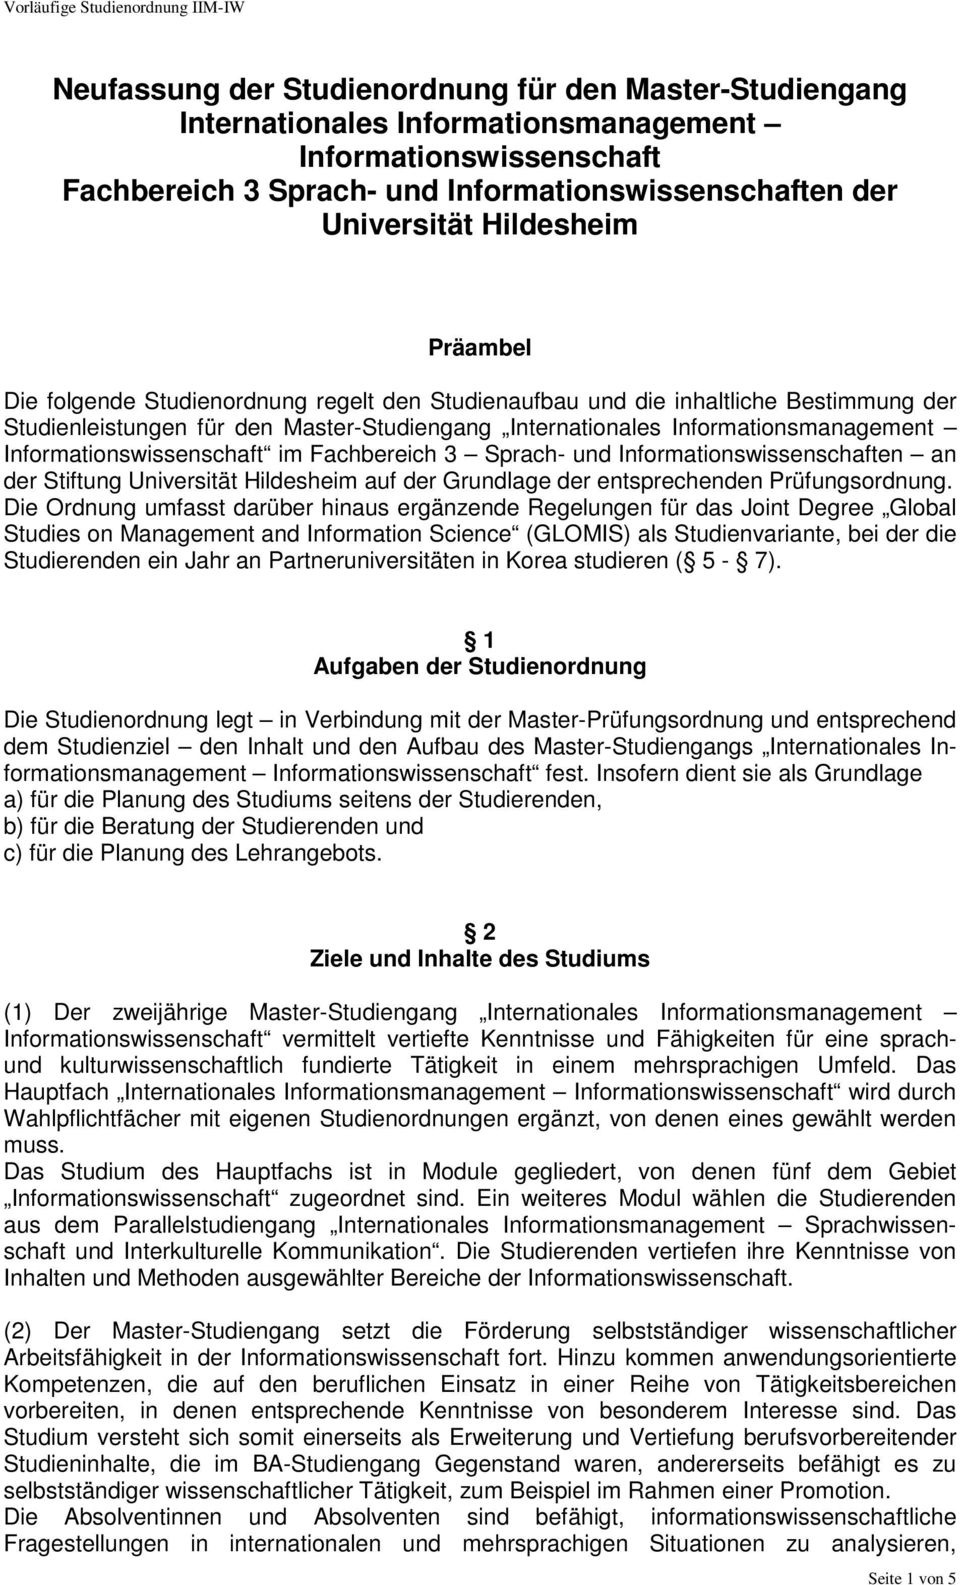 Informationswissenschaft im Fachbereich 3 Sprach- und Informationswissenschaften an der Stiftung Universität Hildesheim auf der Grundlage der entsprechenden Prüfungsordnung.